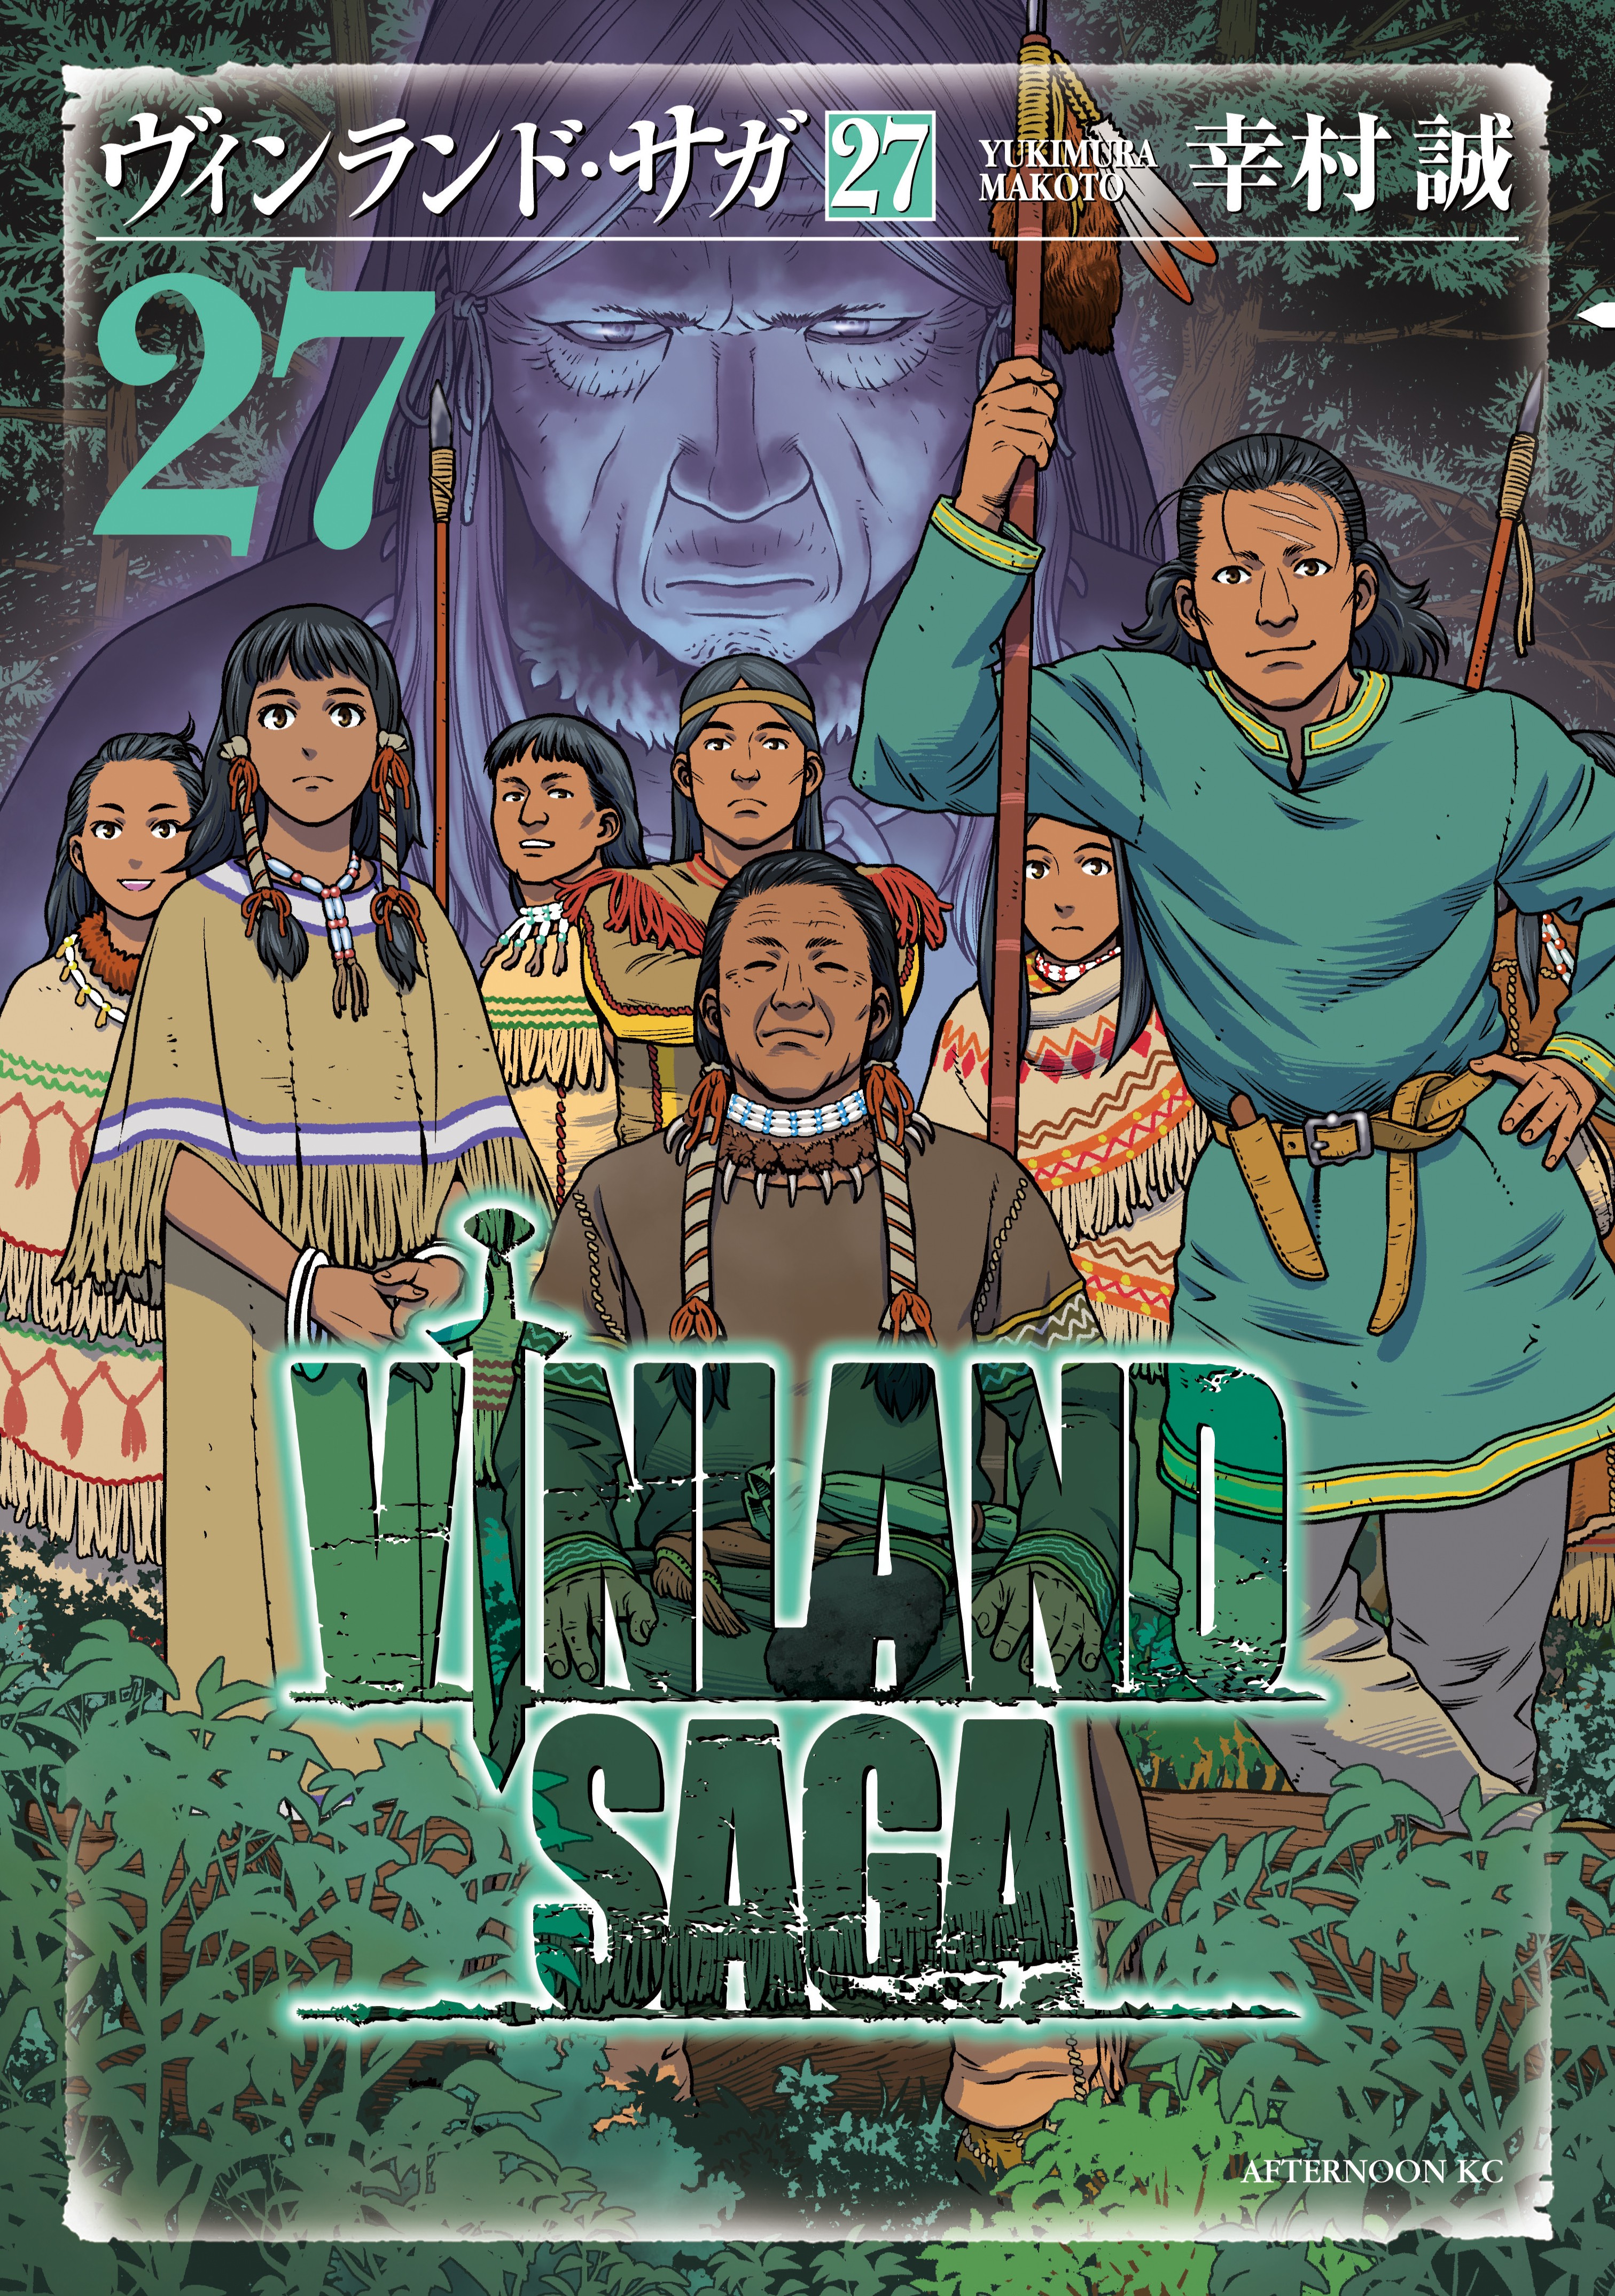 INNER CHORUS  Vinland saga manga, Vinland saga, Saga